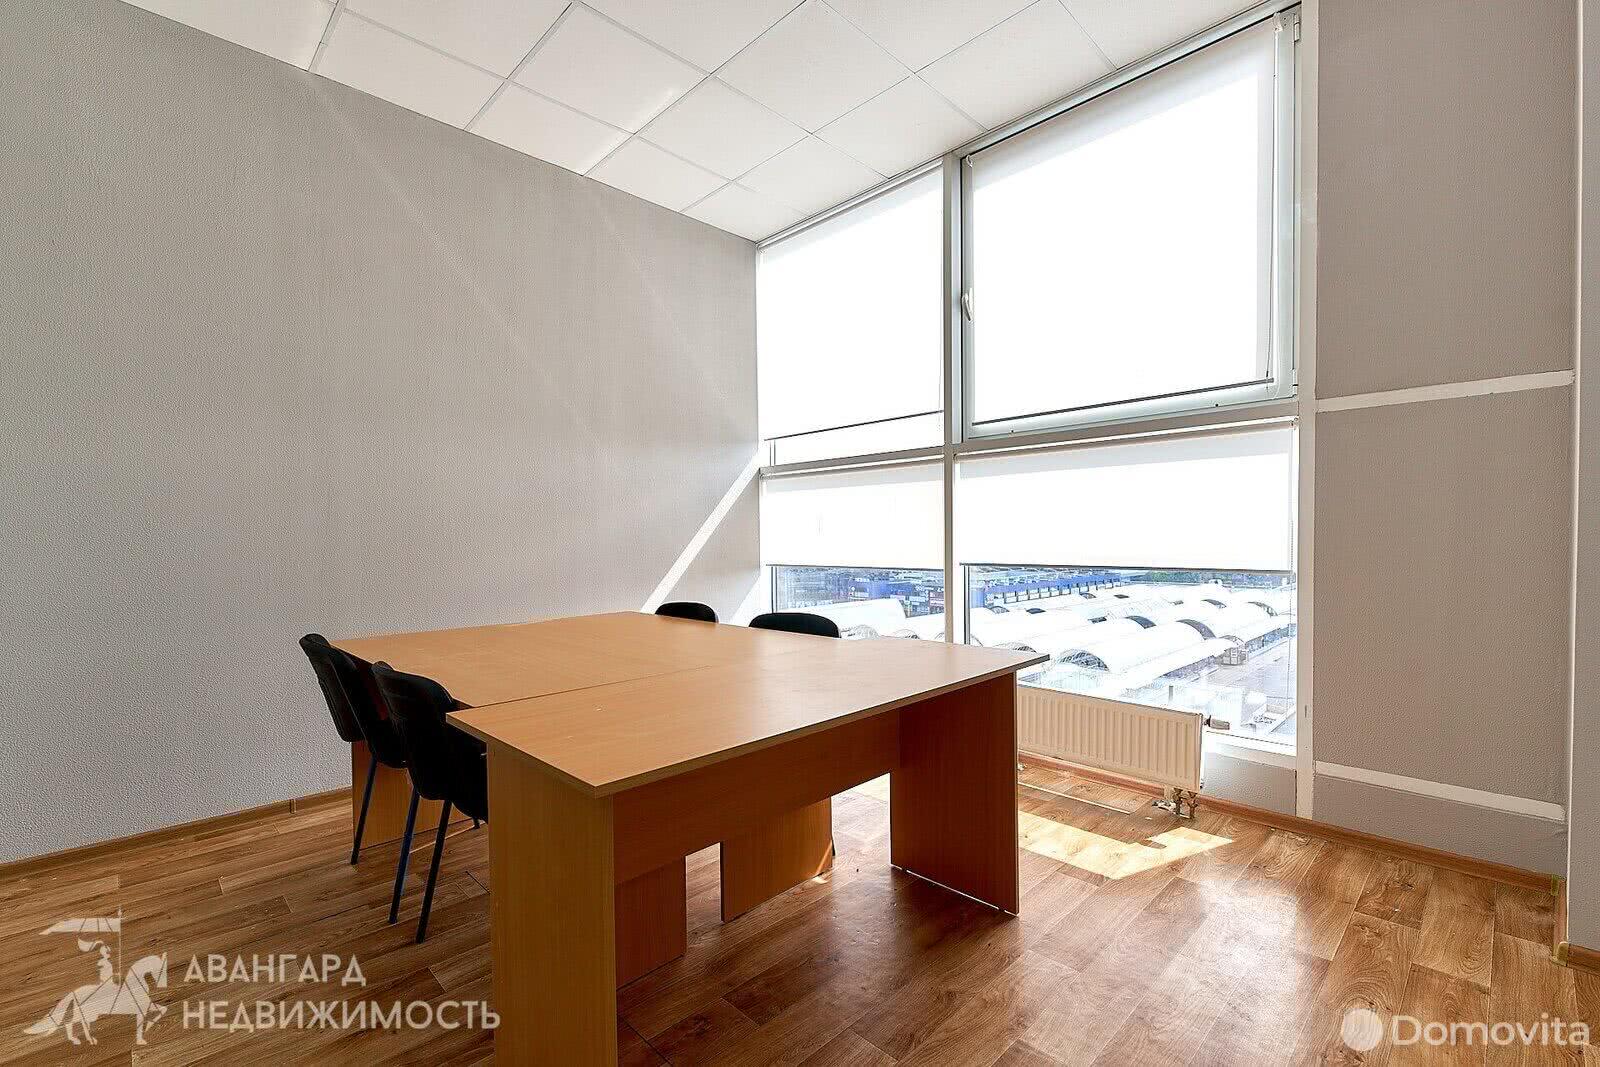 Снять офис на ул. Кульман, д. 9 в Минске, 388EUR, код 10587 - фото 6